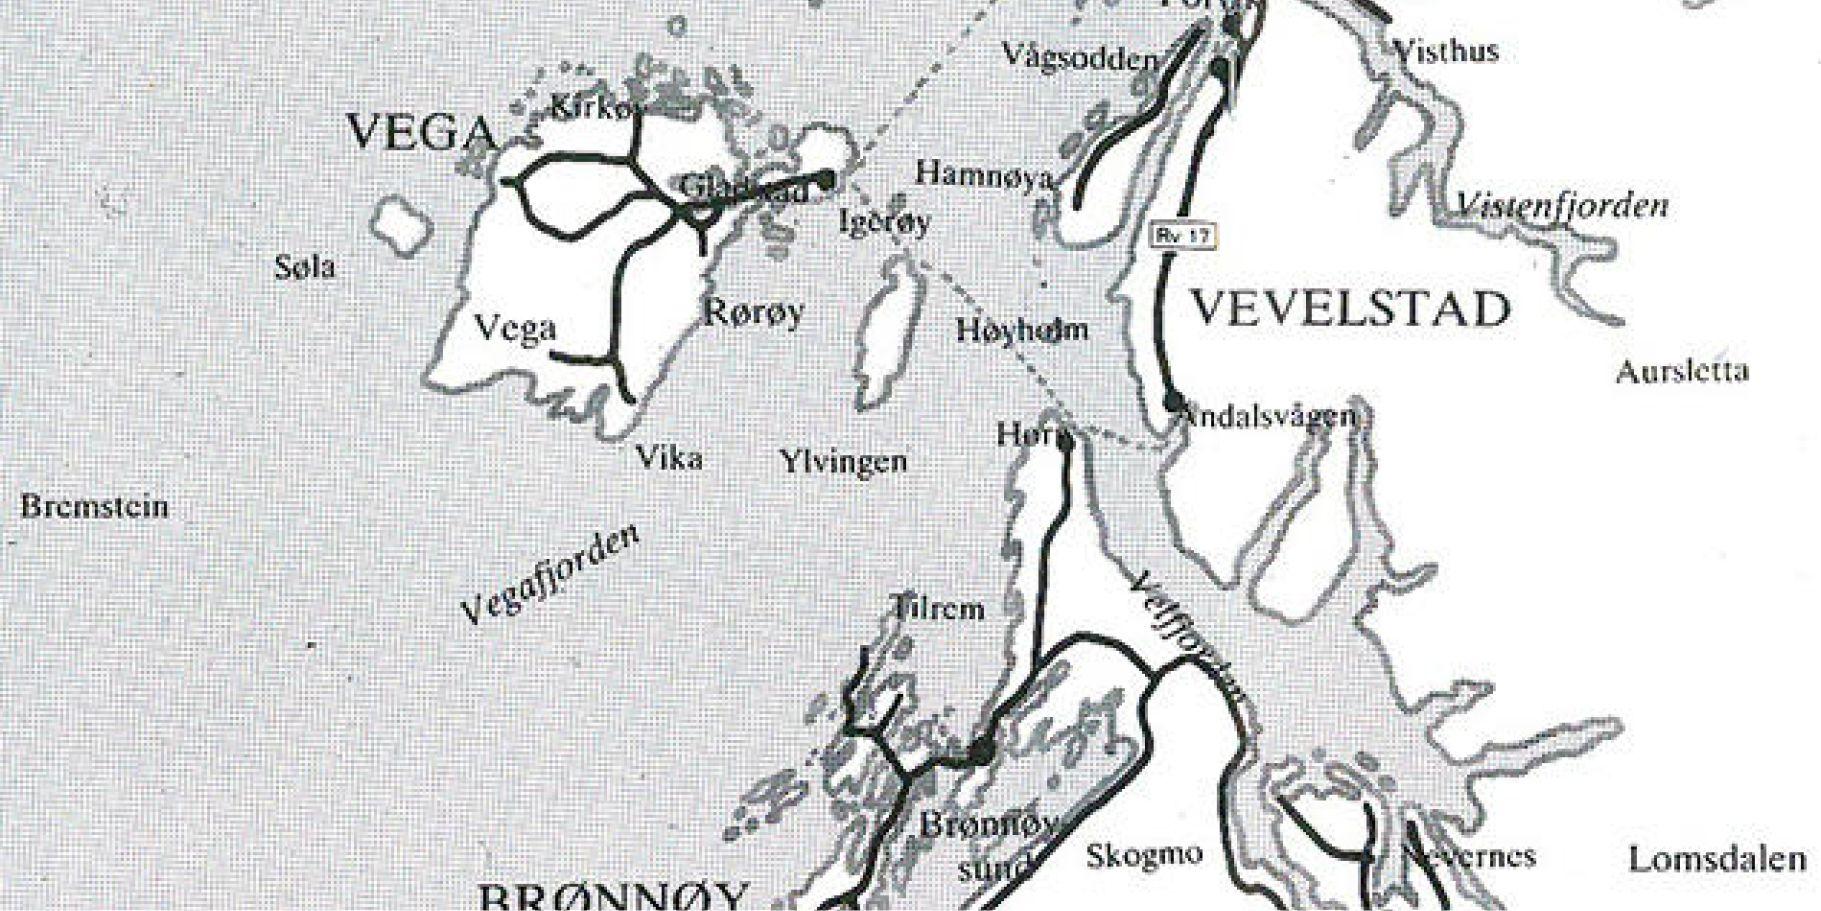 Svart hvit kart som viser kysten utenfor Brønnøysund med tydelig merking av Vega og fjereruter